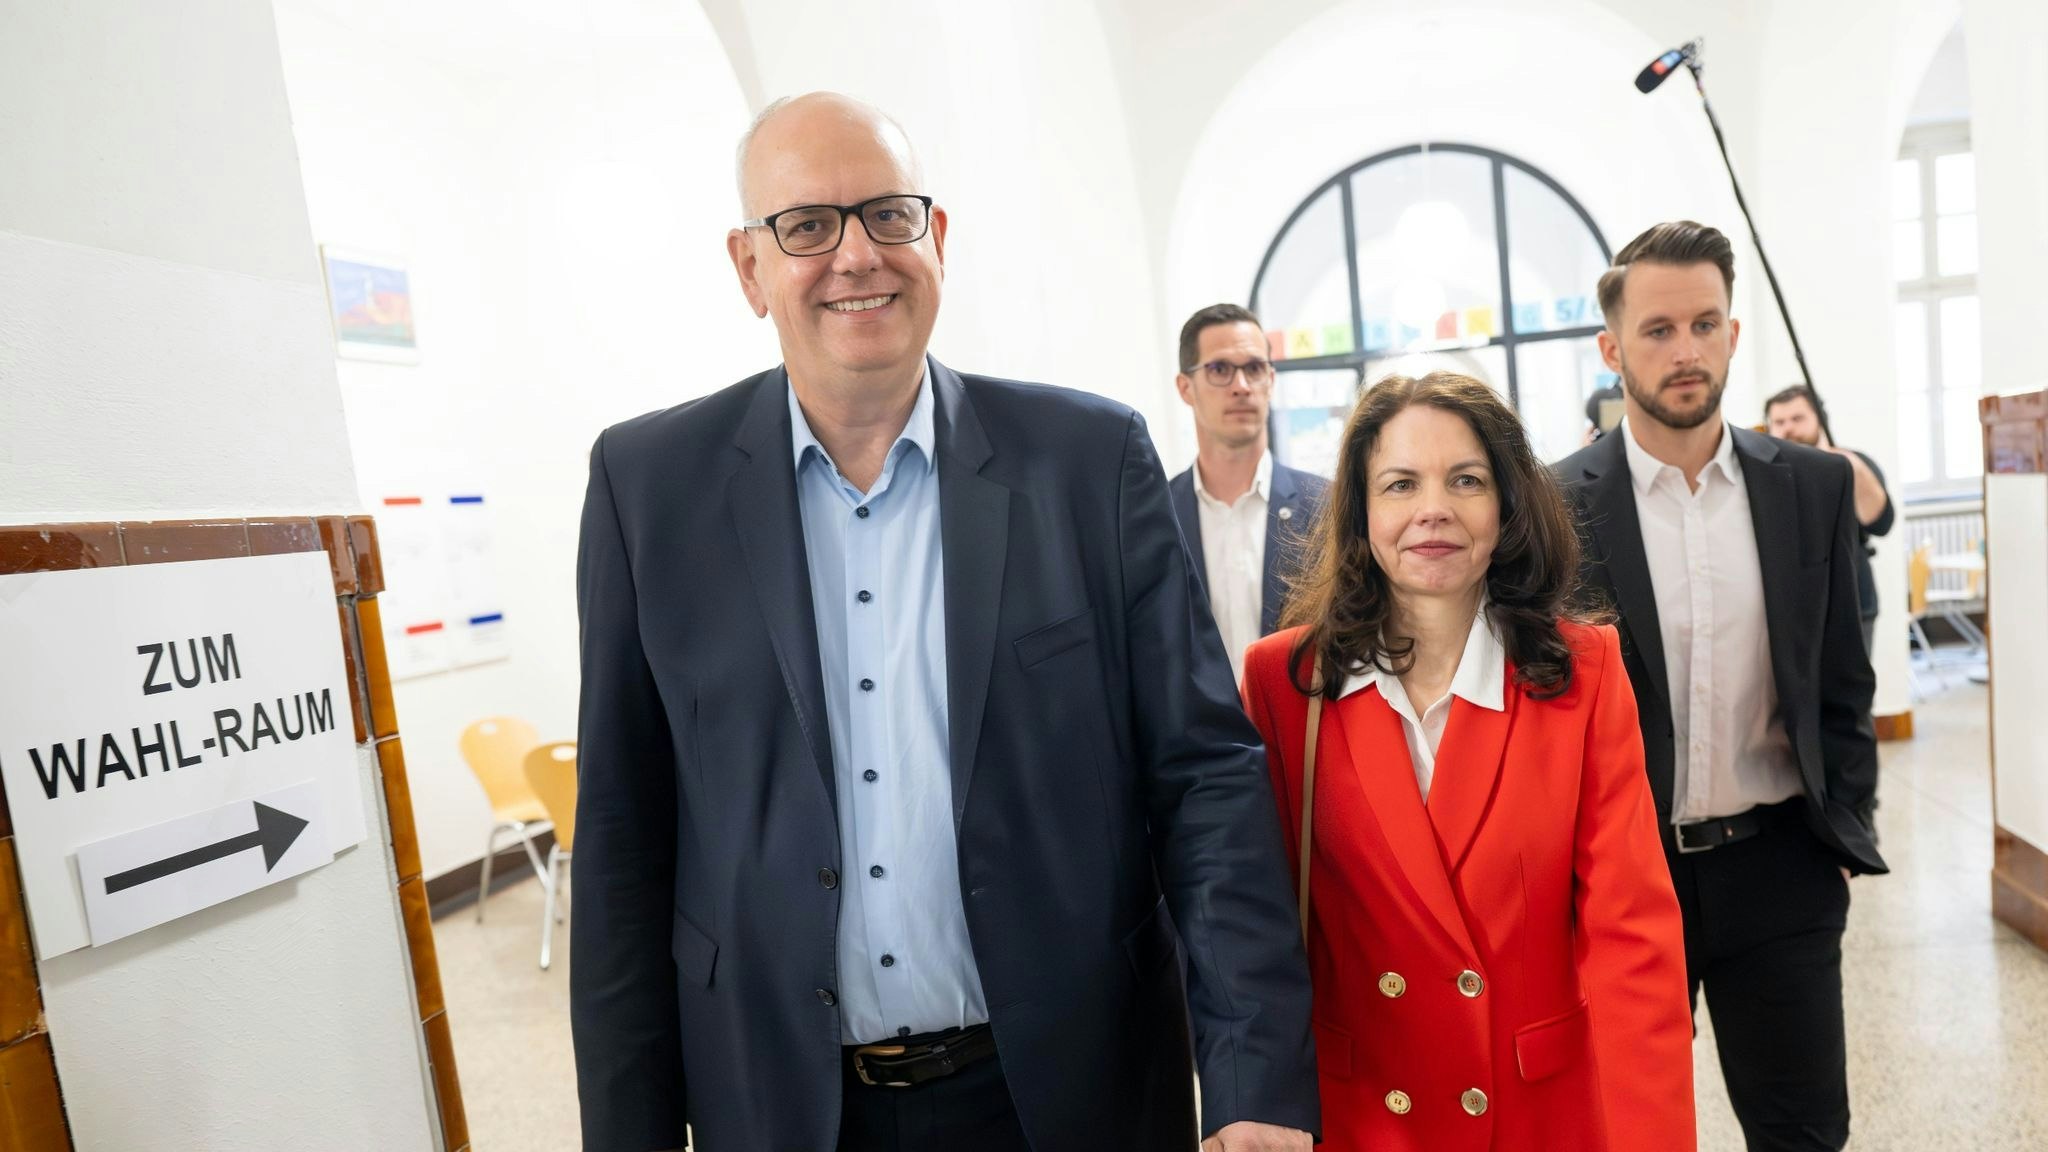 Spitzenkandidat der SPD in Bremen Andreas Bovenschulte und seine Partnerin Kerstin Krüger geben im Wahllokal ihre Stimmen ab. Foto: dpa/Sina Schuldt